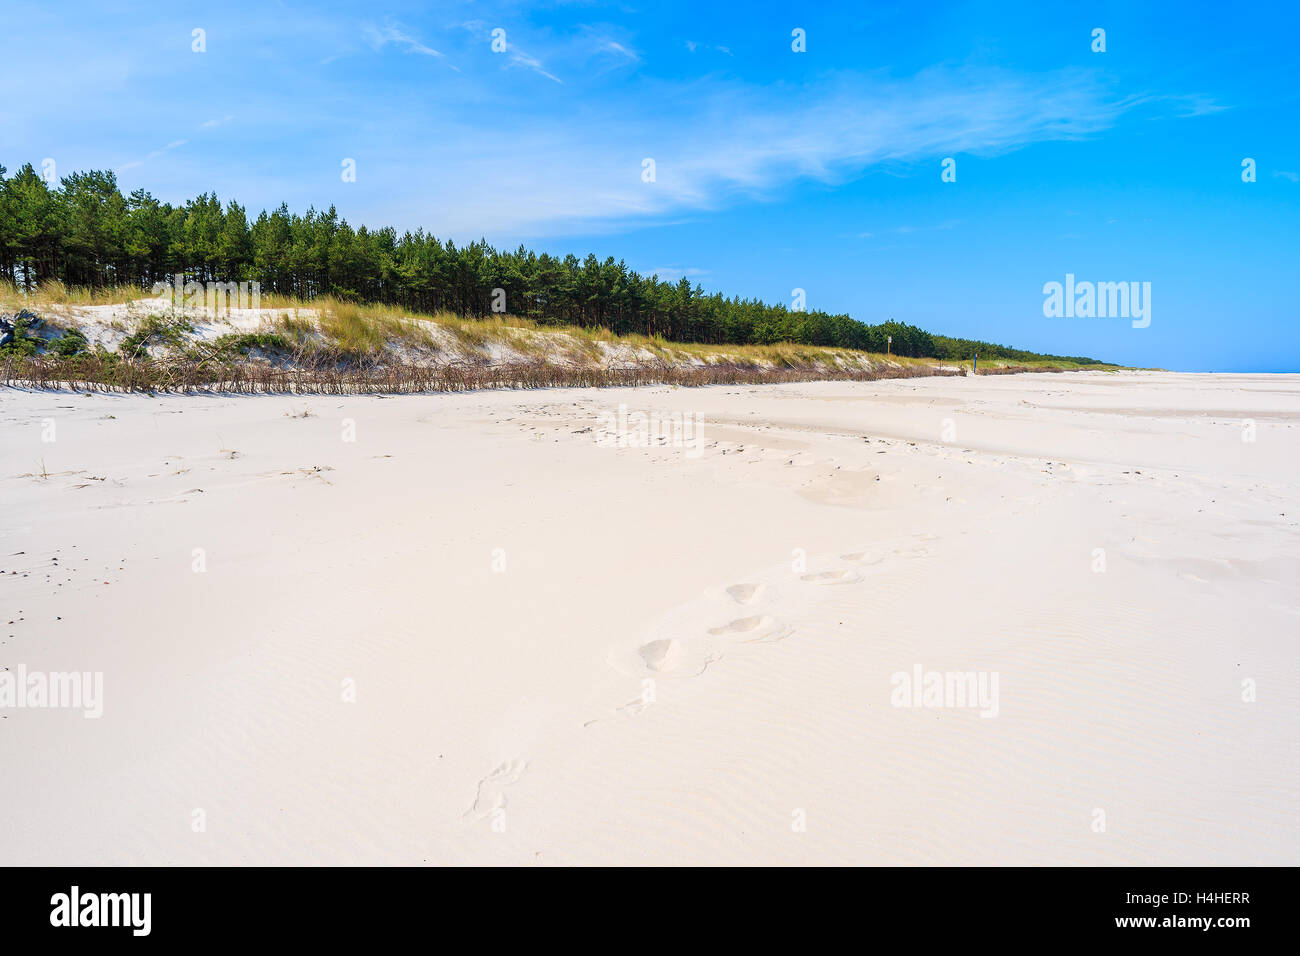 White sand on beach at Baltic Sea, Bialogora coastal village, Poland Stock Photo